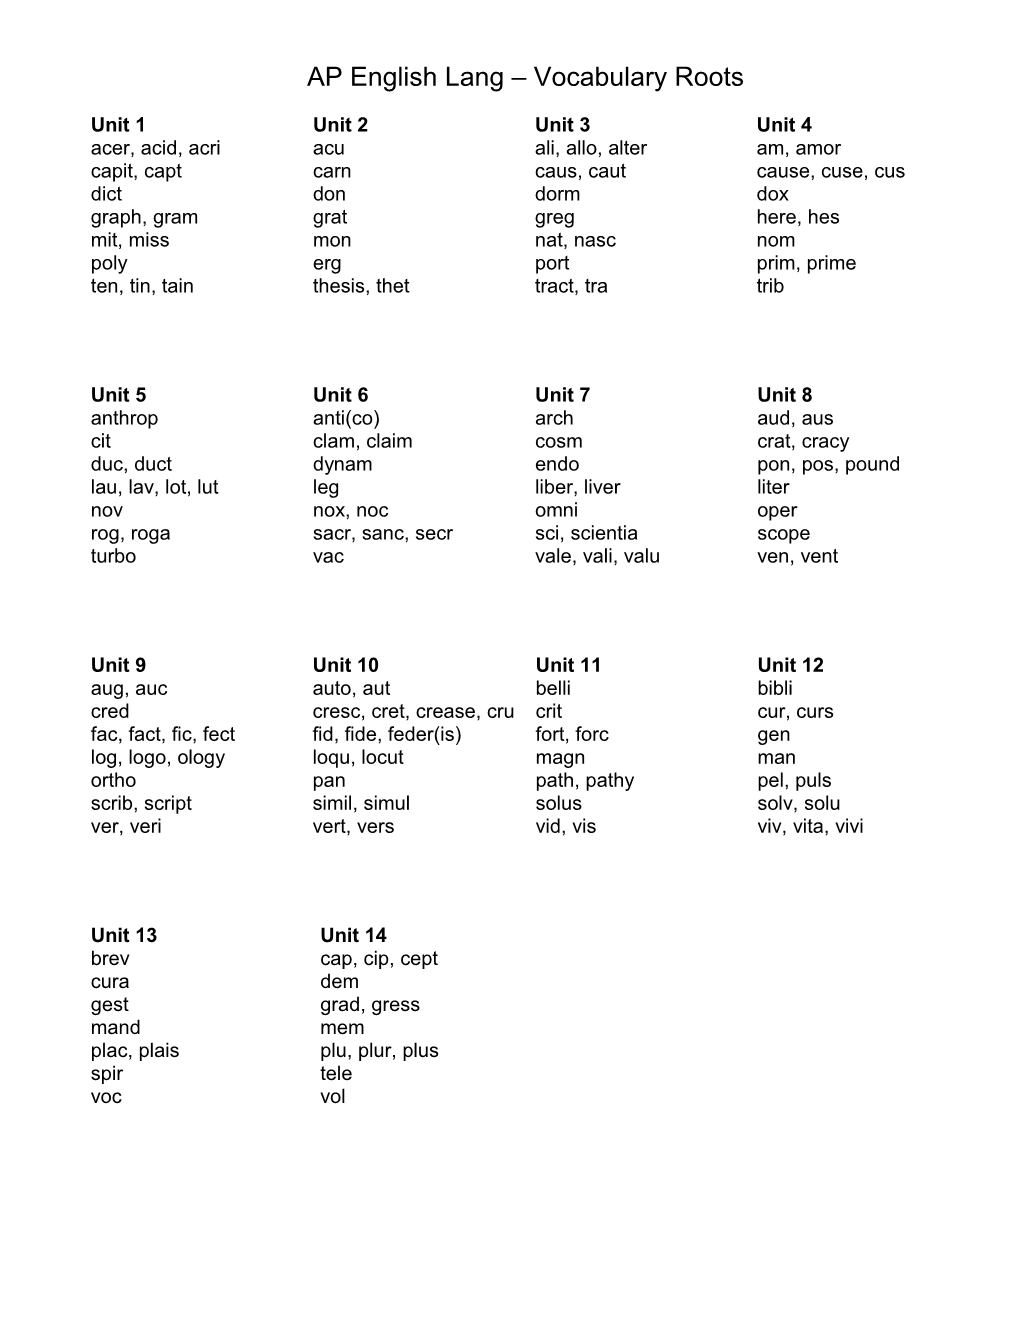 AP English Lang Vocabulary Roots